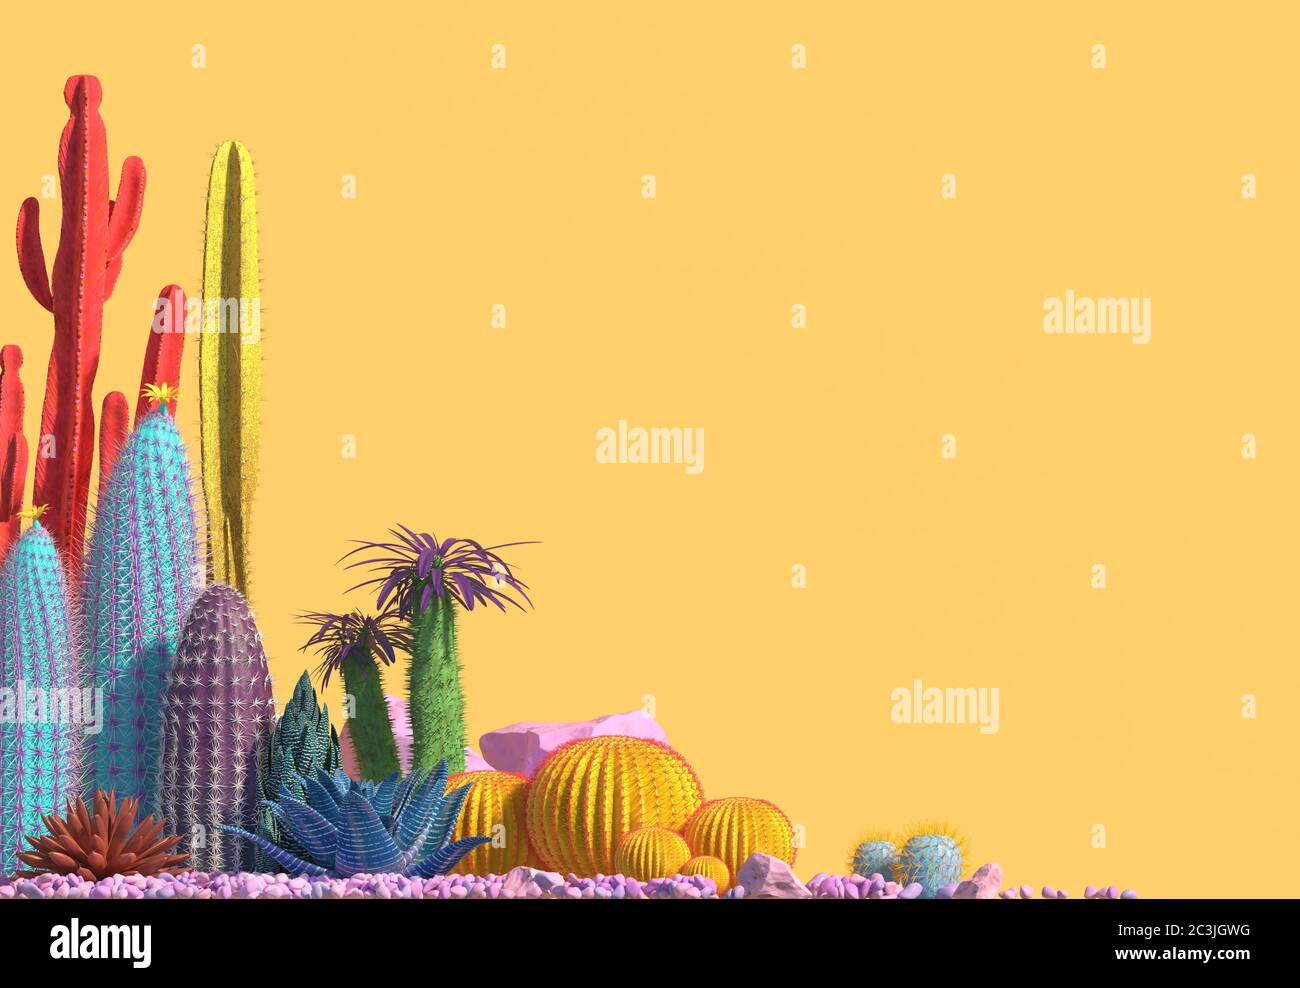 Composizione decorativa di gruppi di diverse specie di cactus multicolore su sfondo giallo. Arte contemporanea Сopy spazio. Rendering 3D. Foto Stock